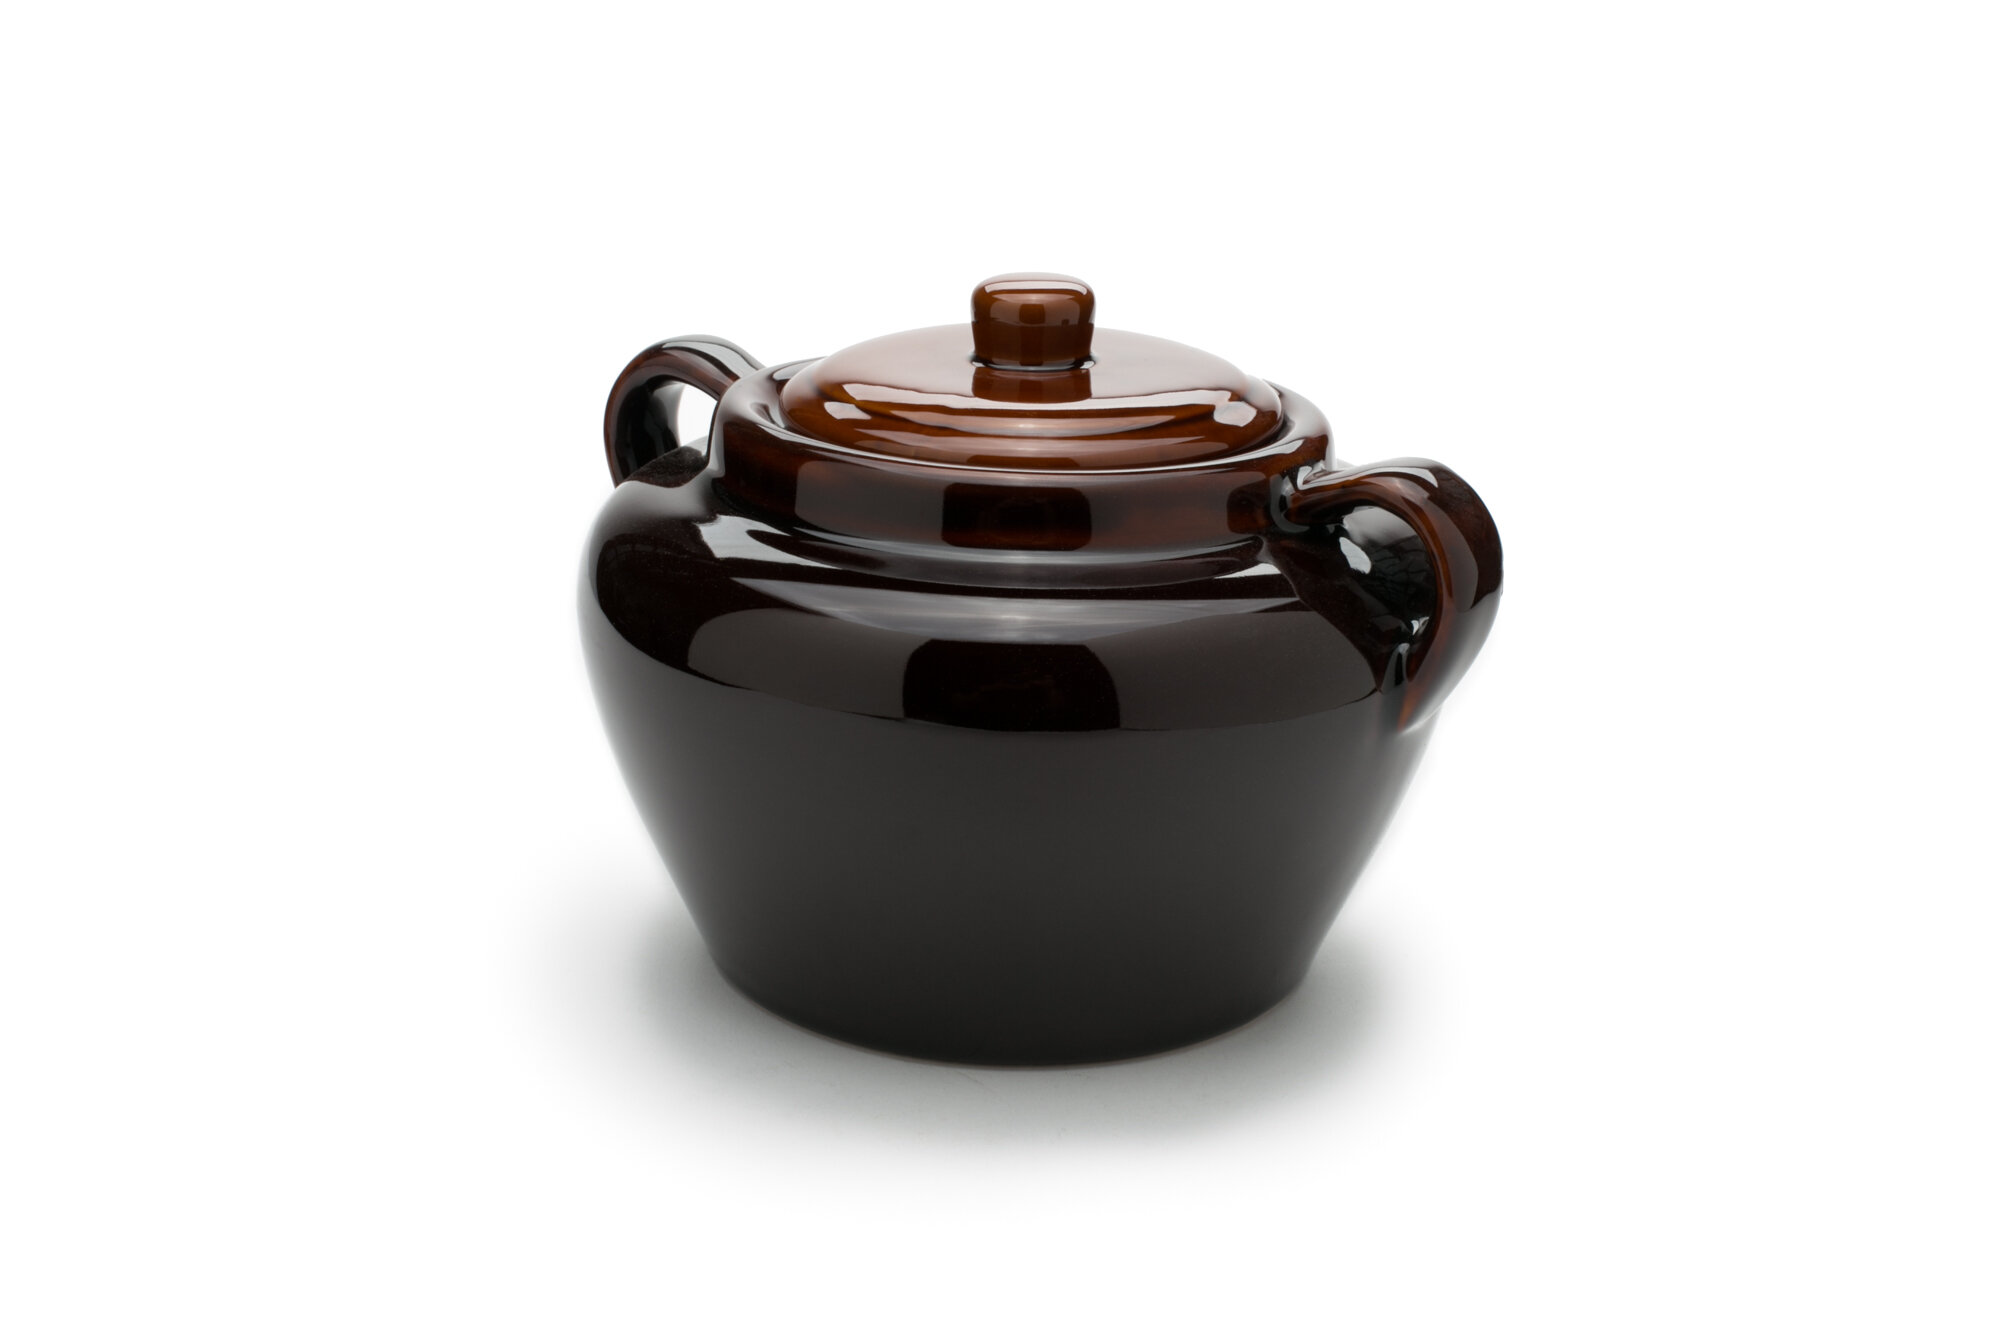 Fox Run Brands Brands 3.5-Quart Stoneware Bean Pot Dutch Oven & Reviews